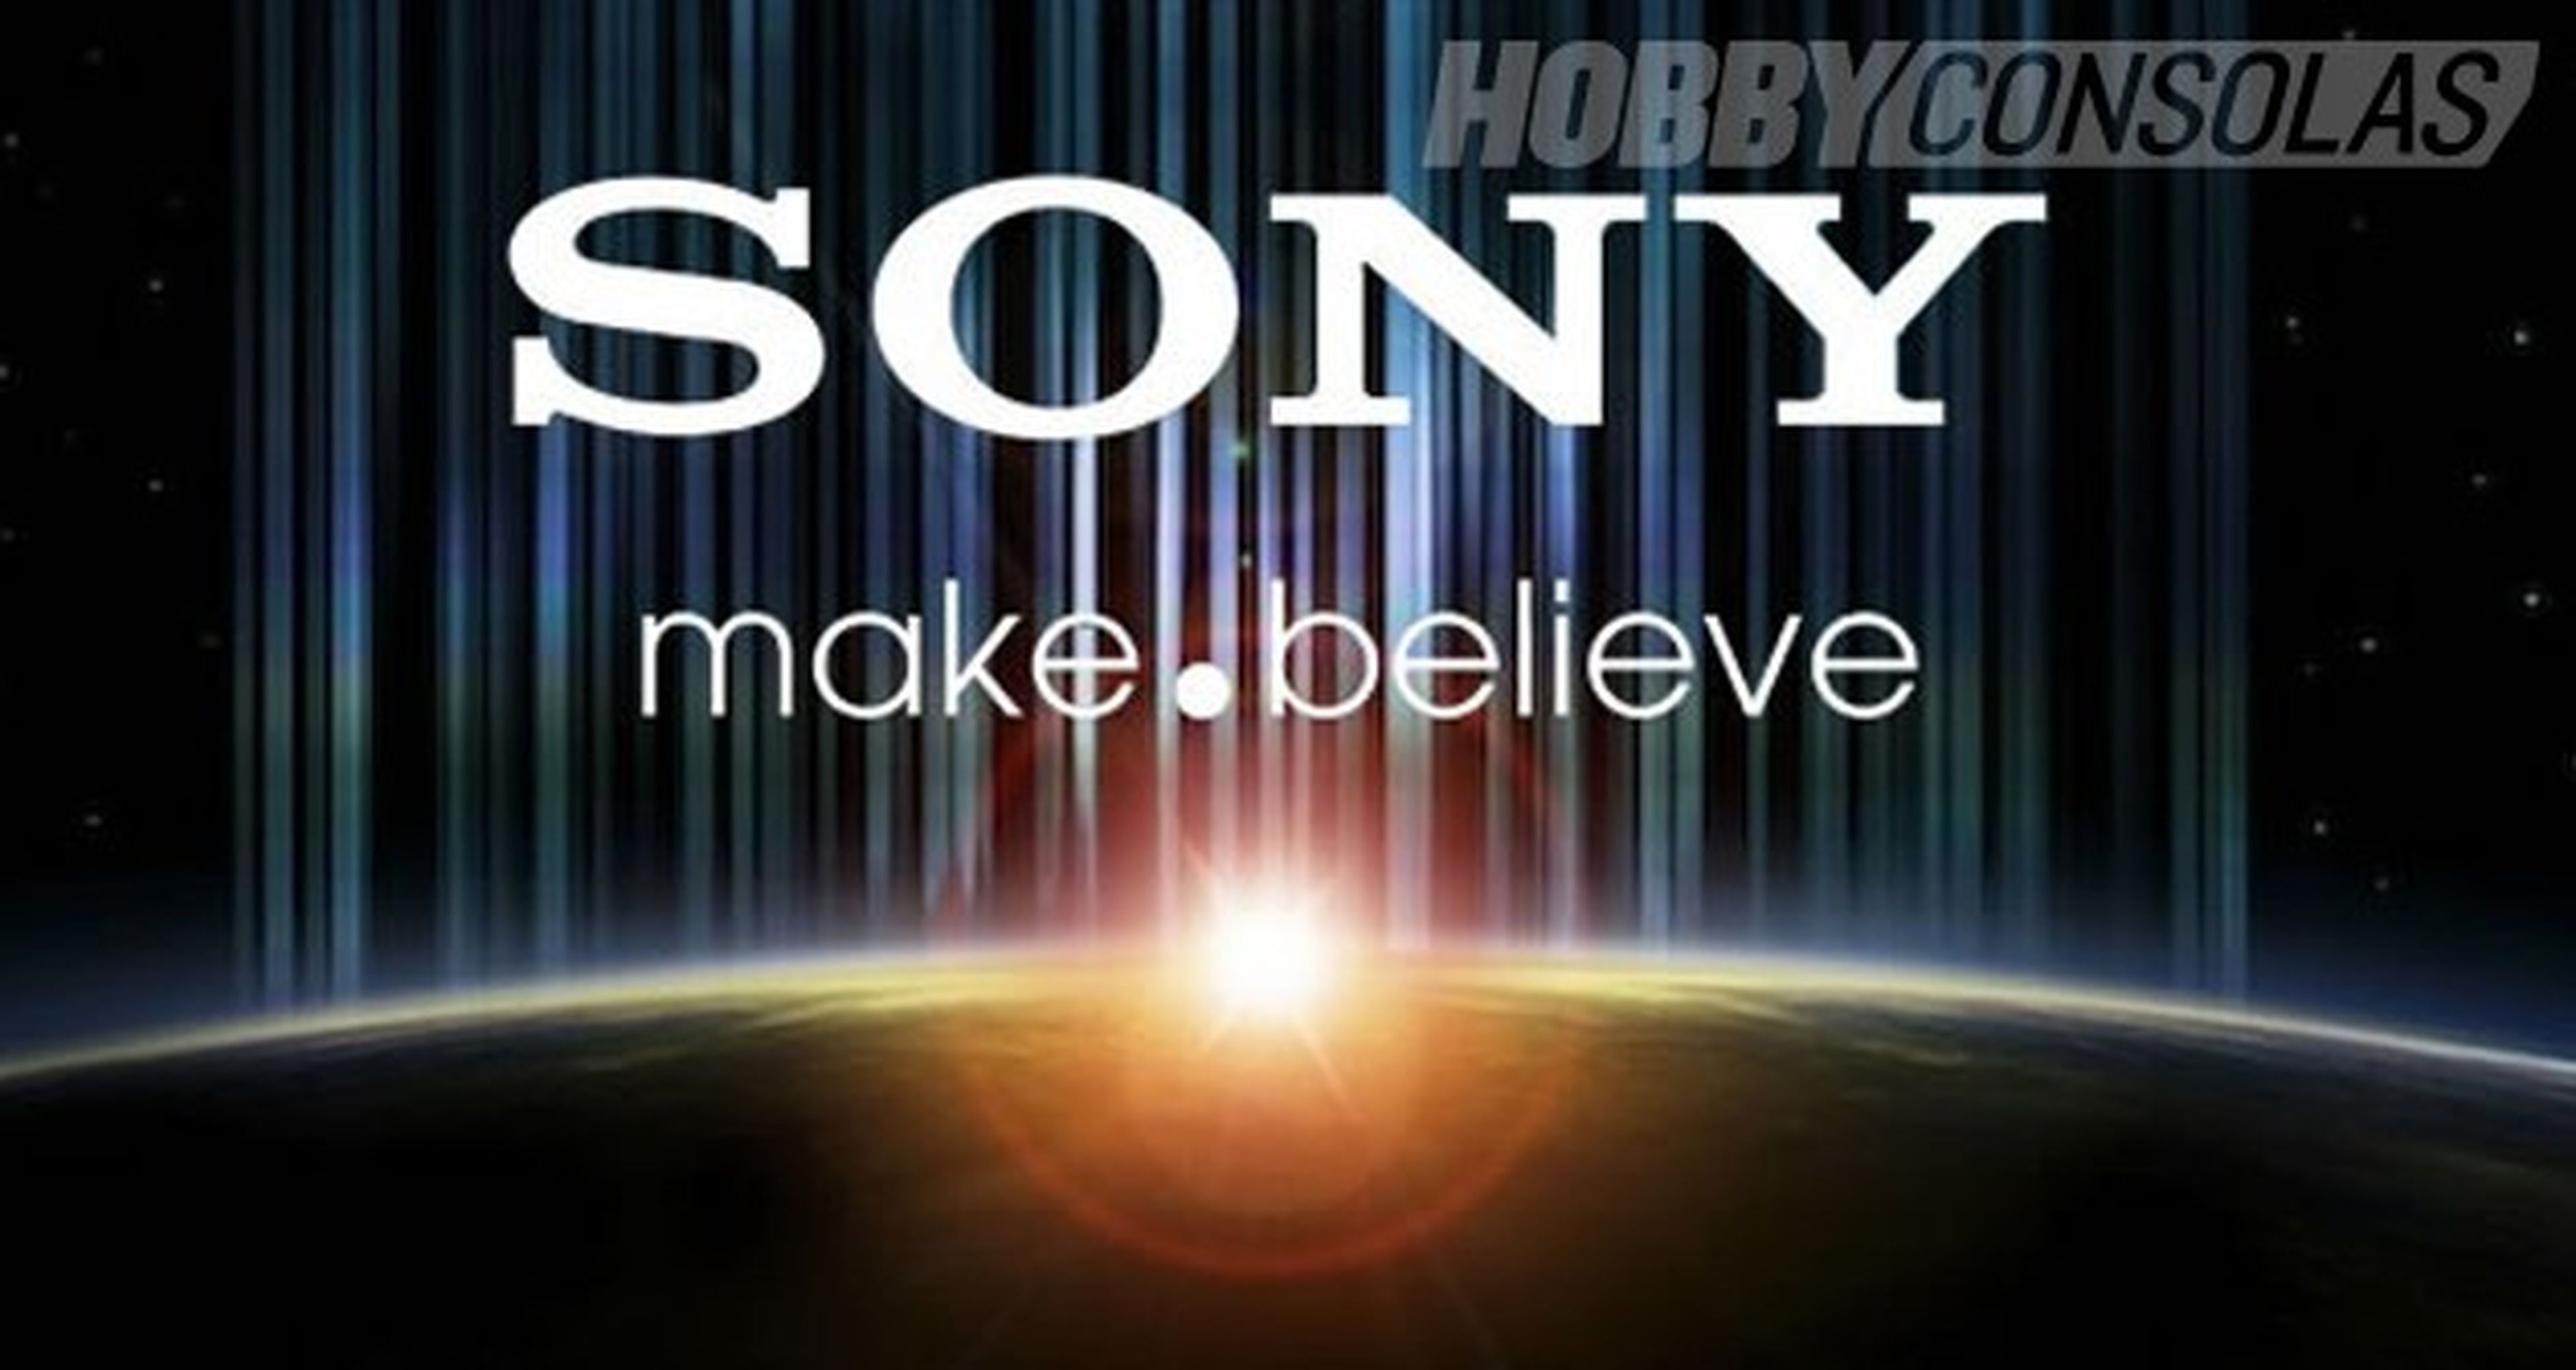 Sony pronostica unas pérdidas de 1.600 millones de euros en el presente año fiscal